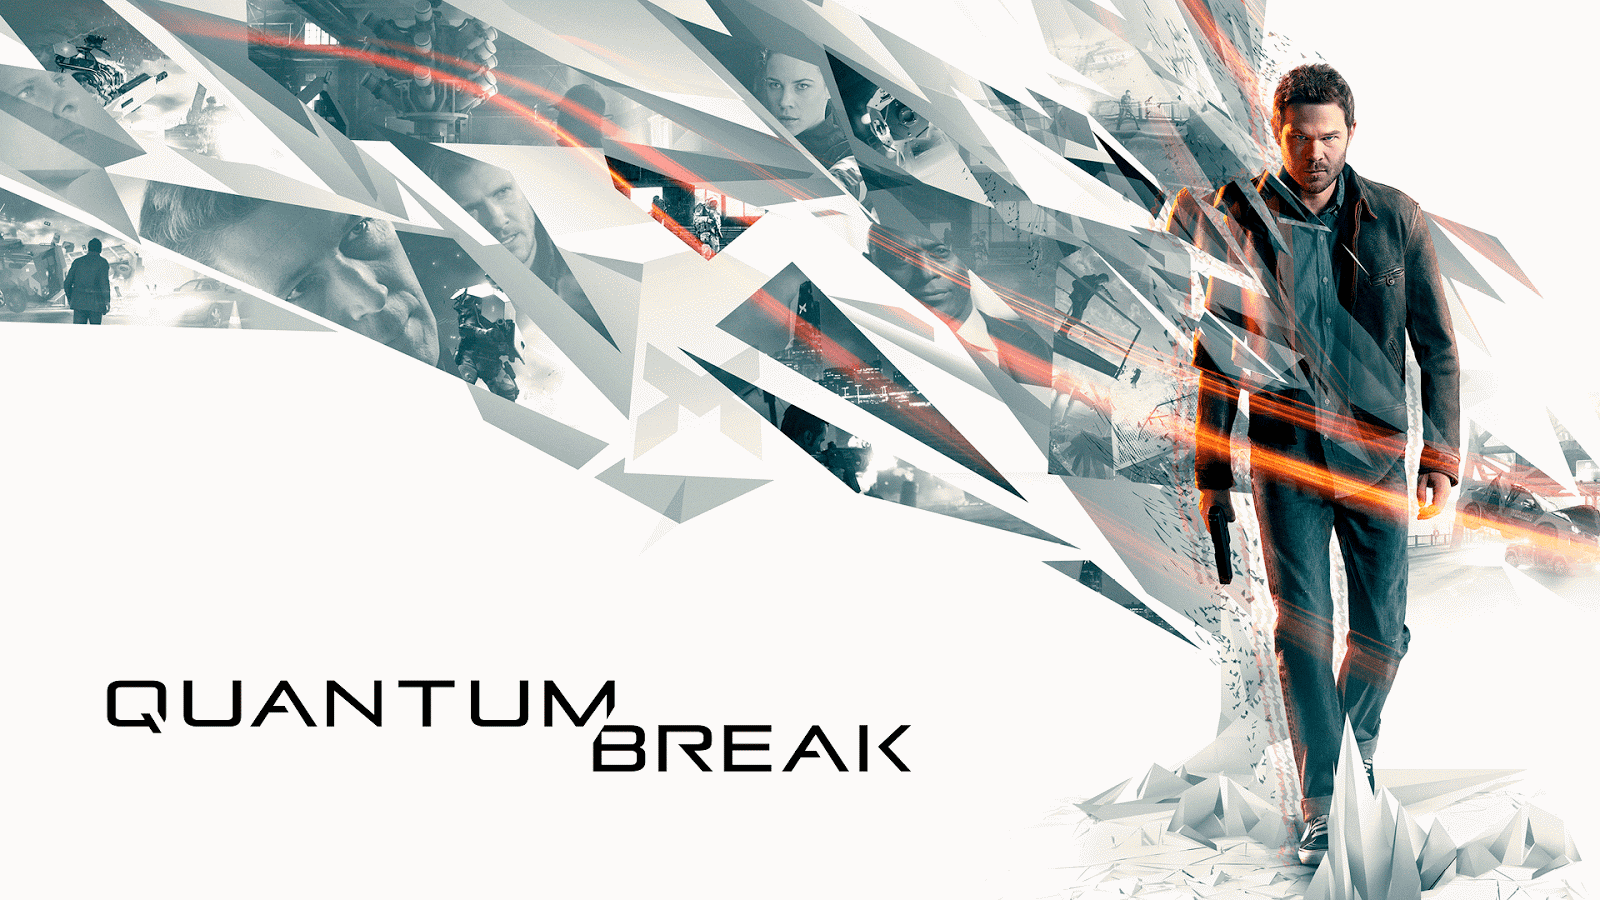 Quantum break pc fix